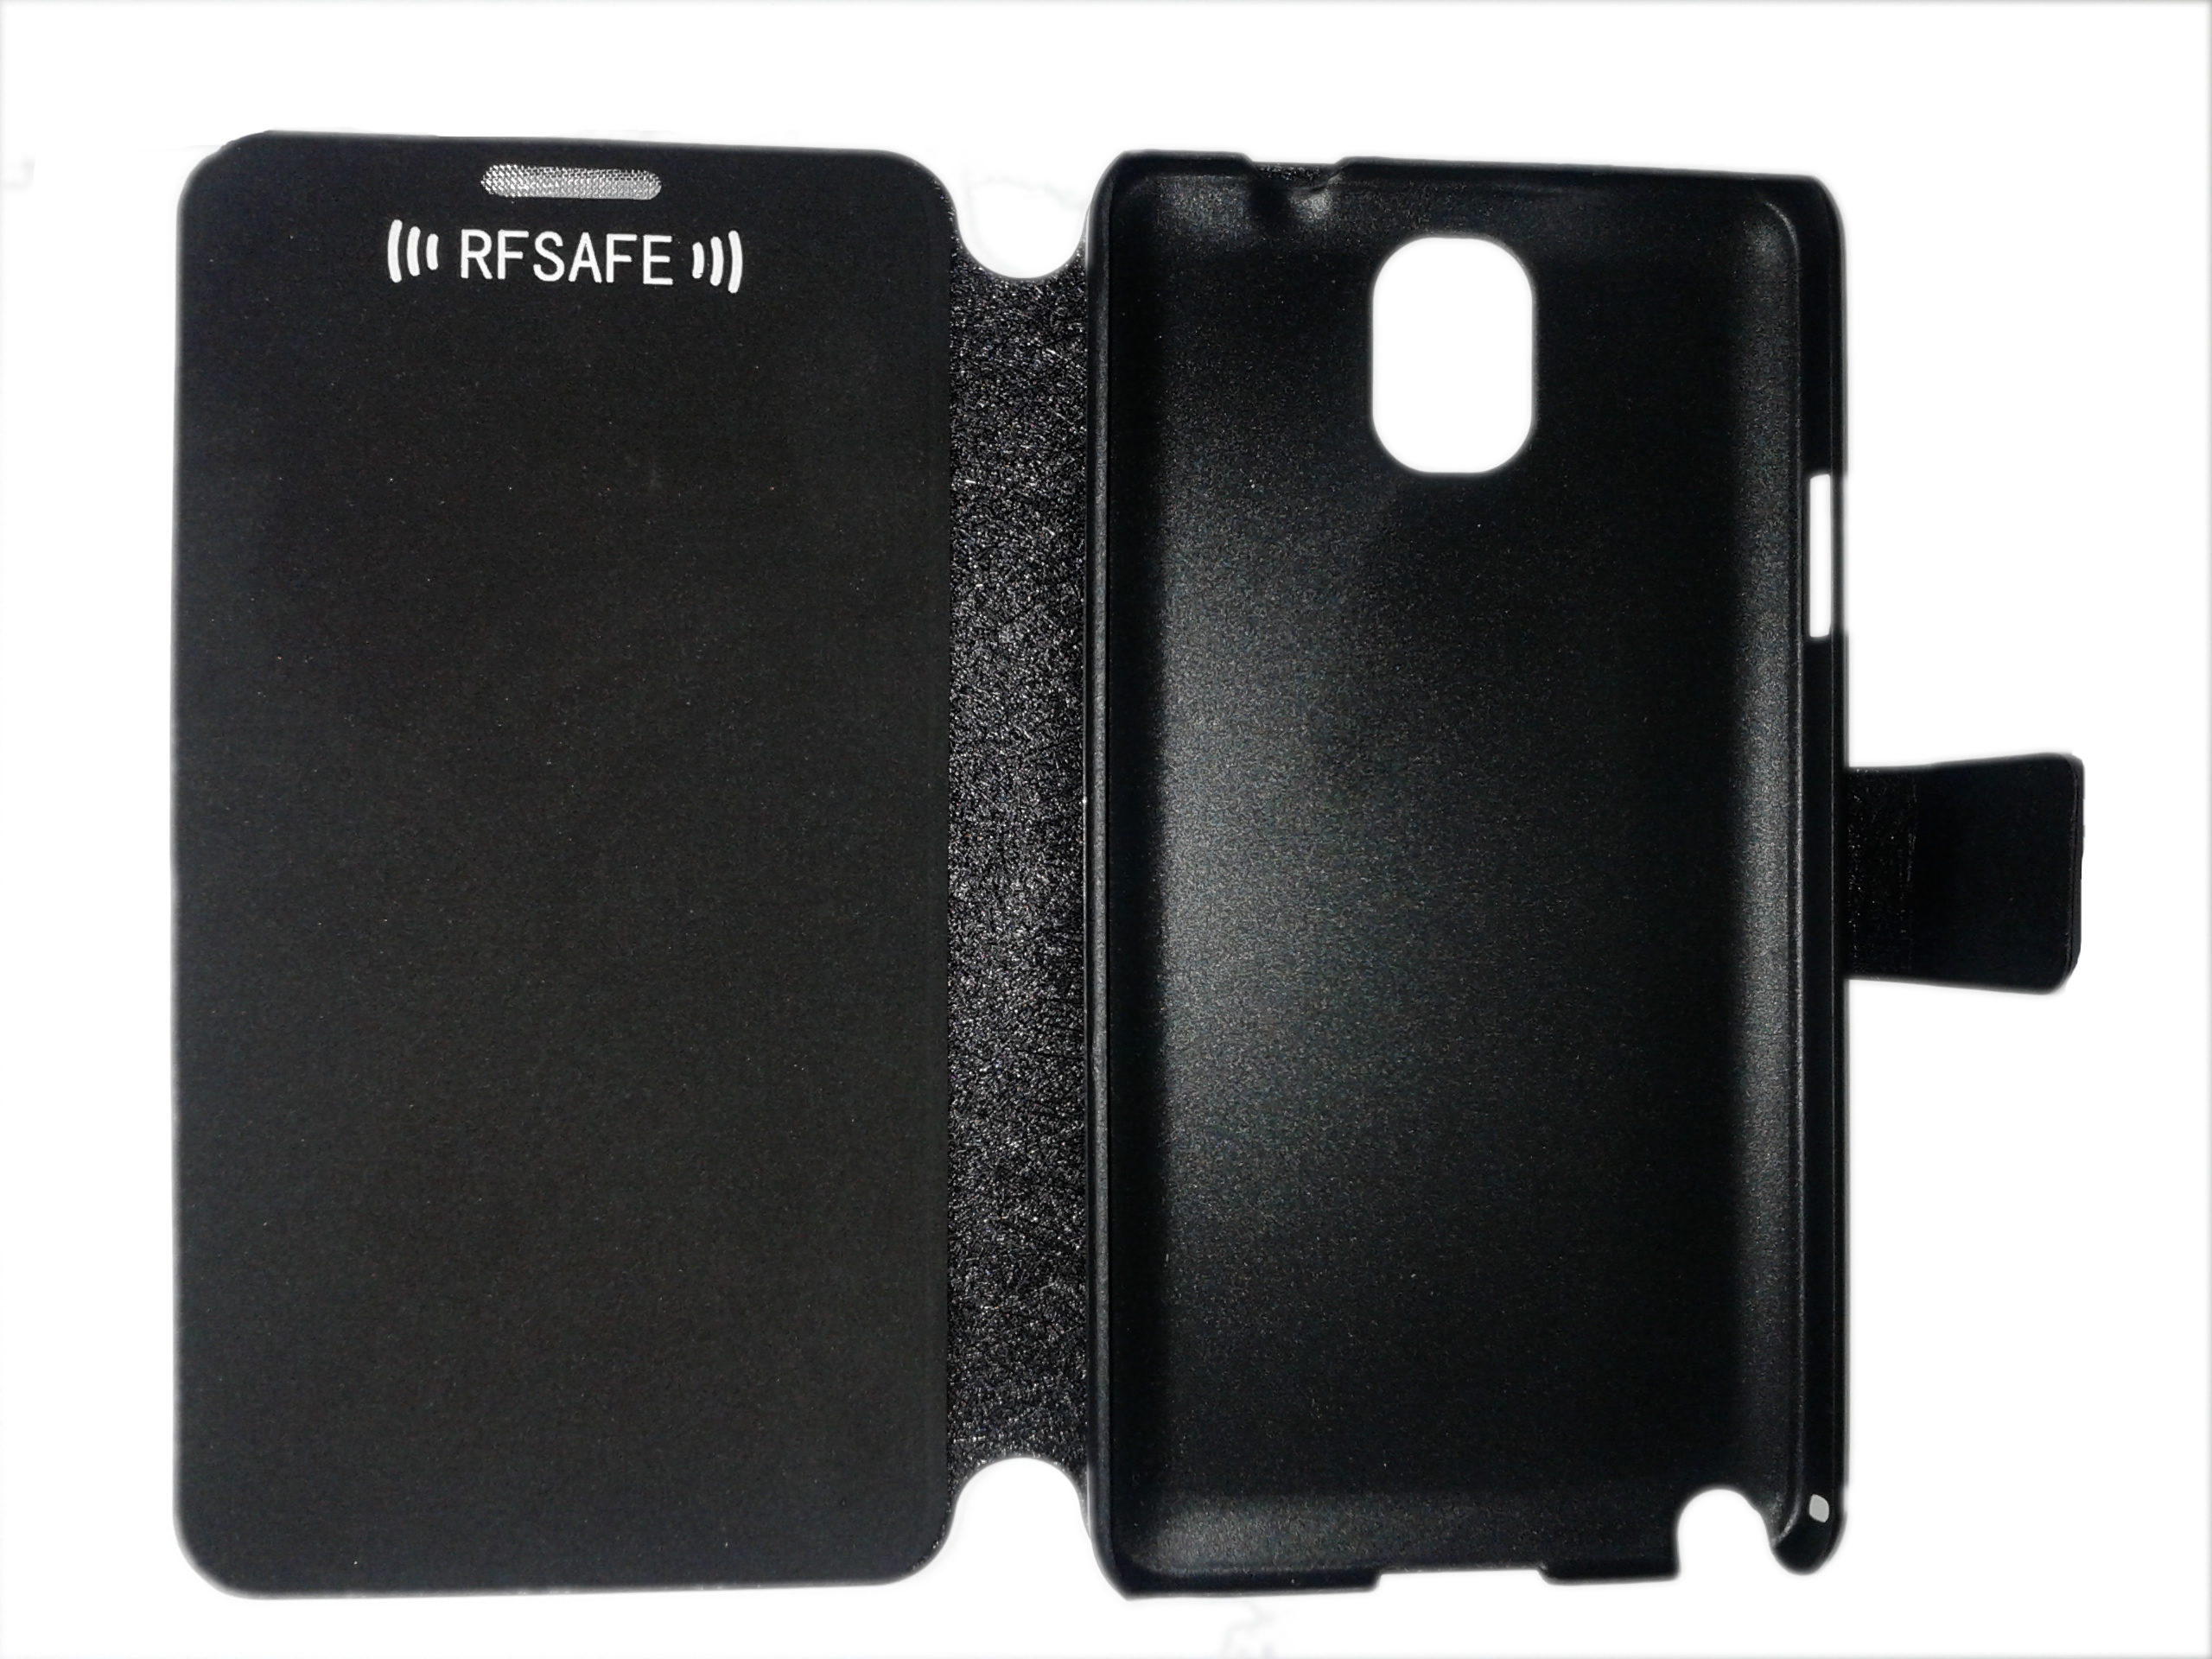 Deter rundvlees vermijden Samsung Galaxy Note 3 Flip Cover Case * RF SAFE® Radio Frequency Safe